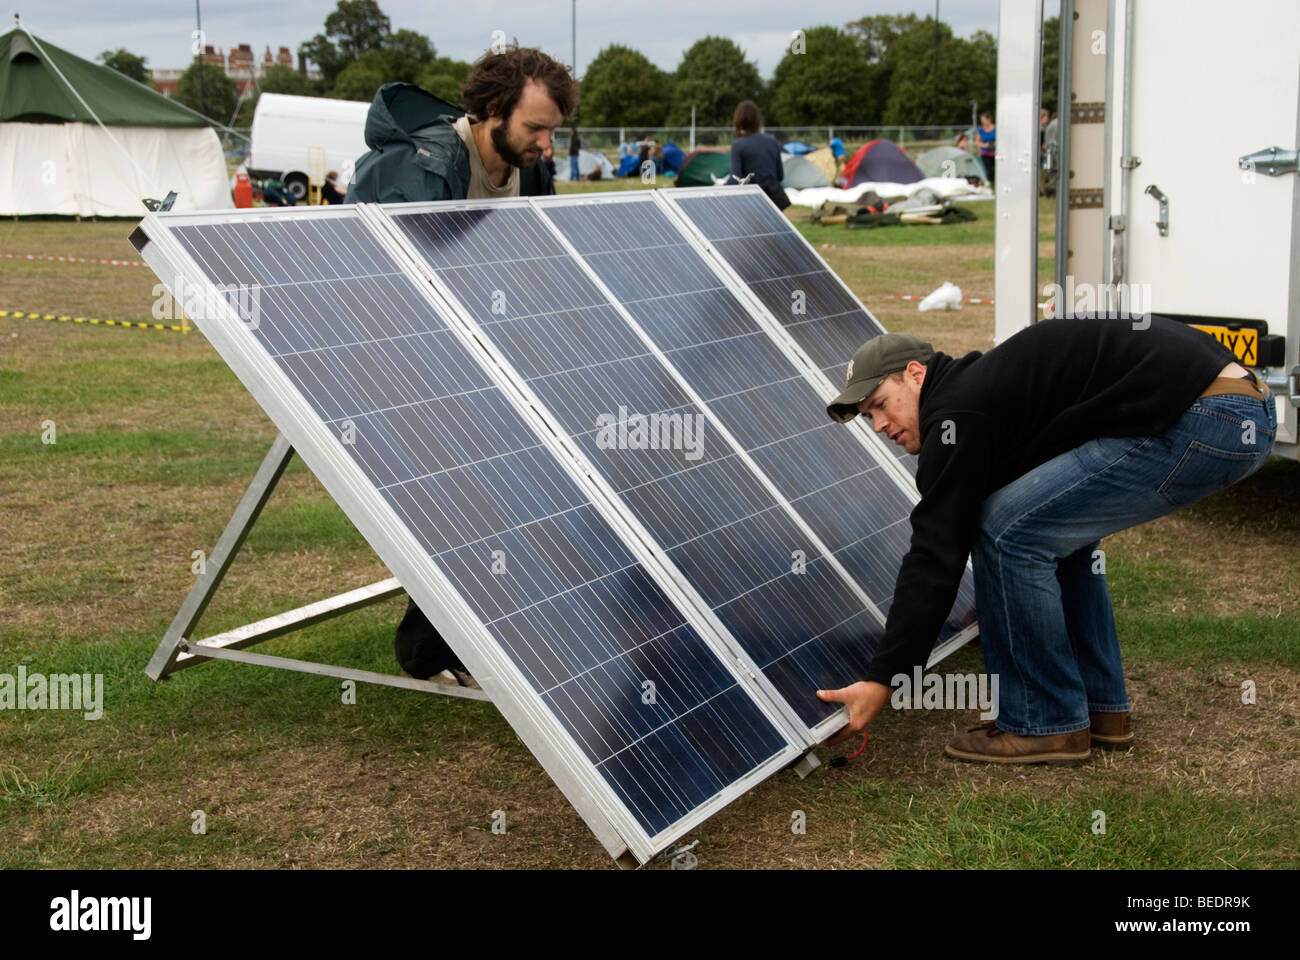 26 août 2009 Camp climatique arrive à Blackheath. Les campeurs mis en place des panneaux solaires pour fournir de l'électricité. Banque D'Images